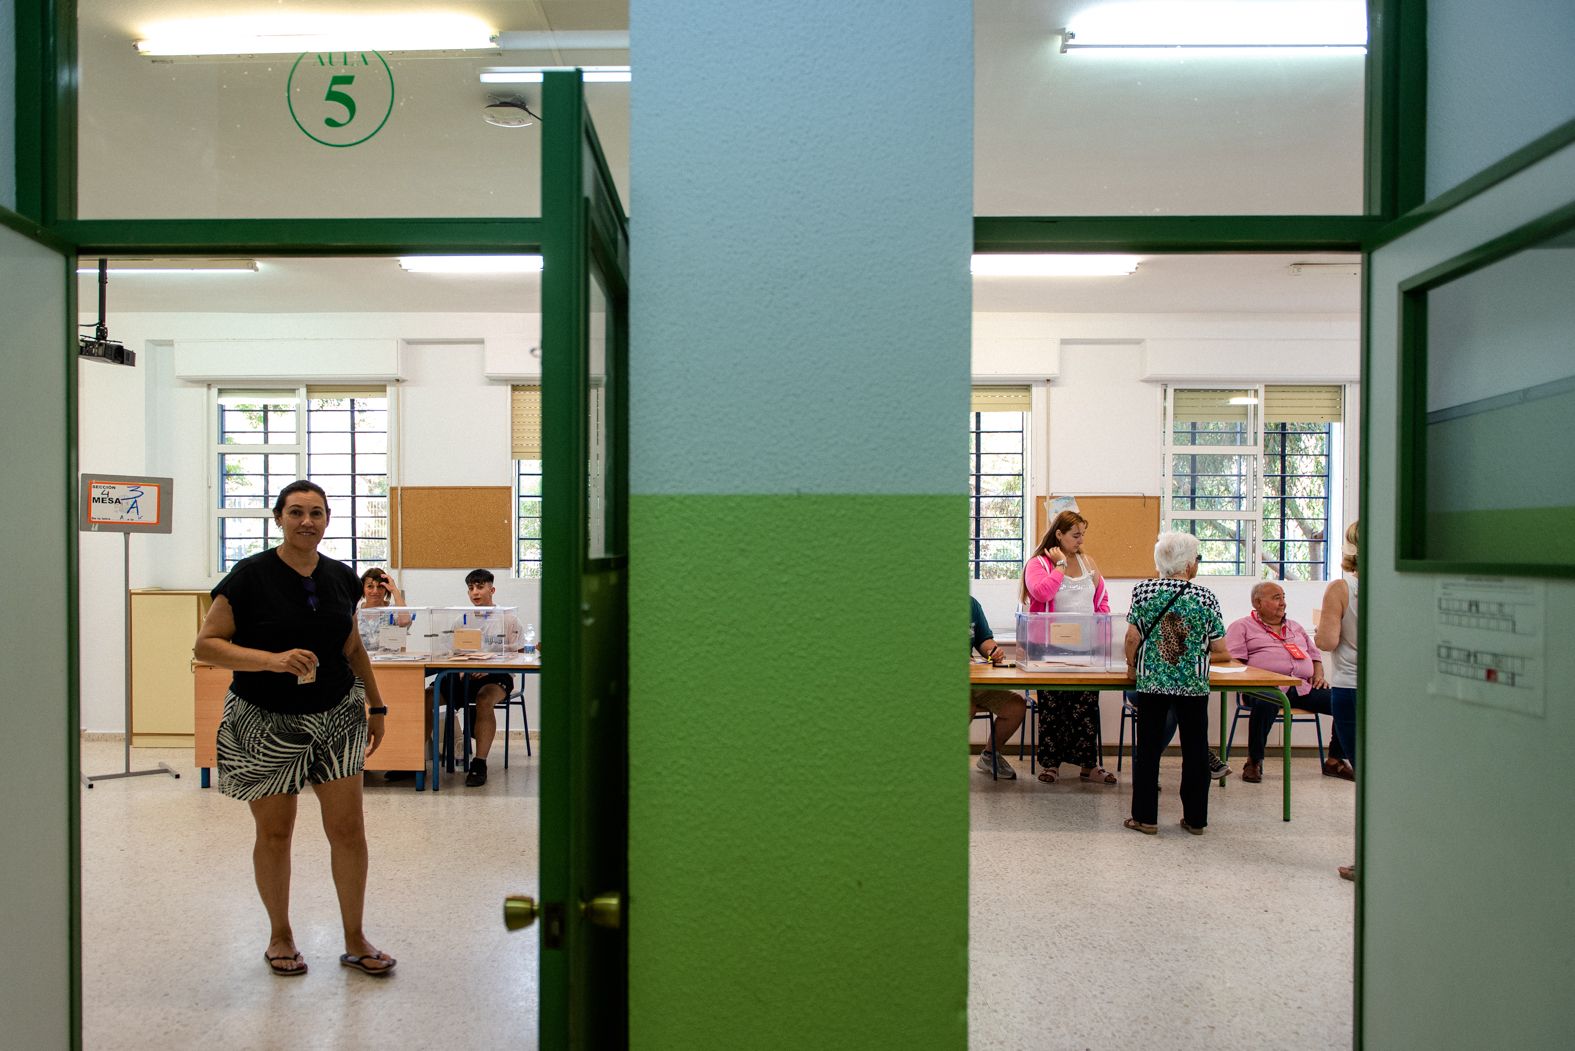 Una imagen de la jornada electoral con una persona al fondo votando en la urna.